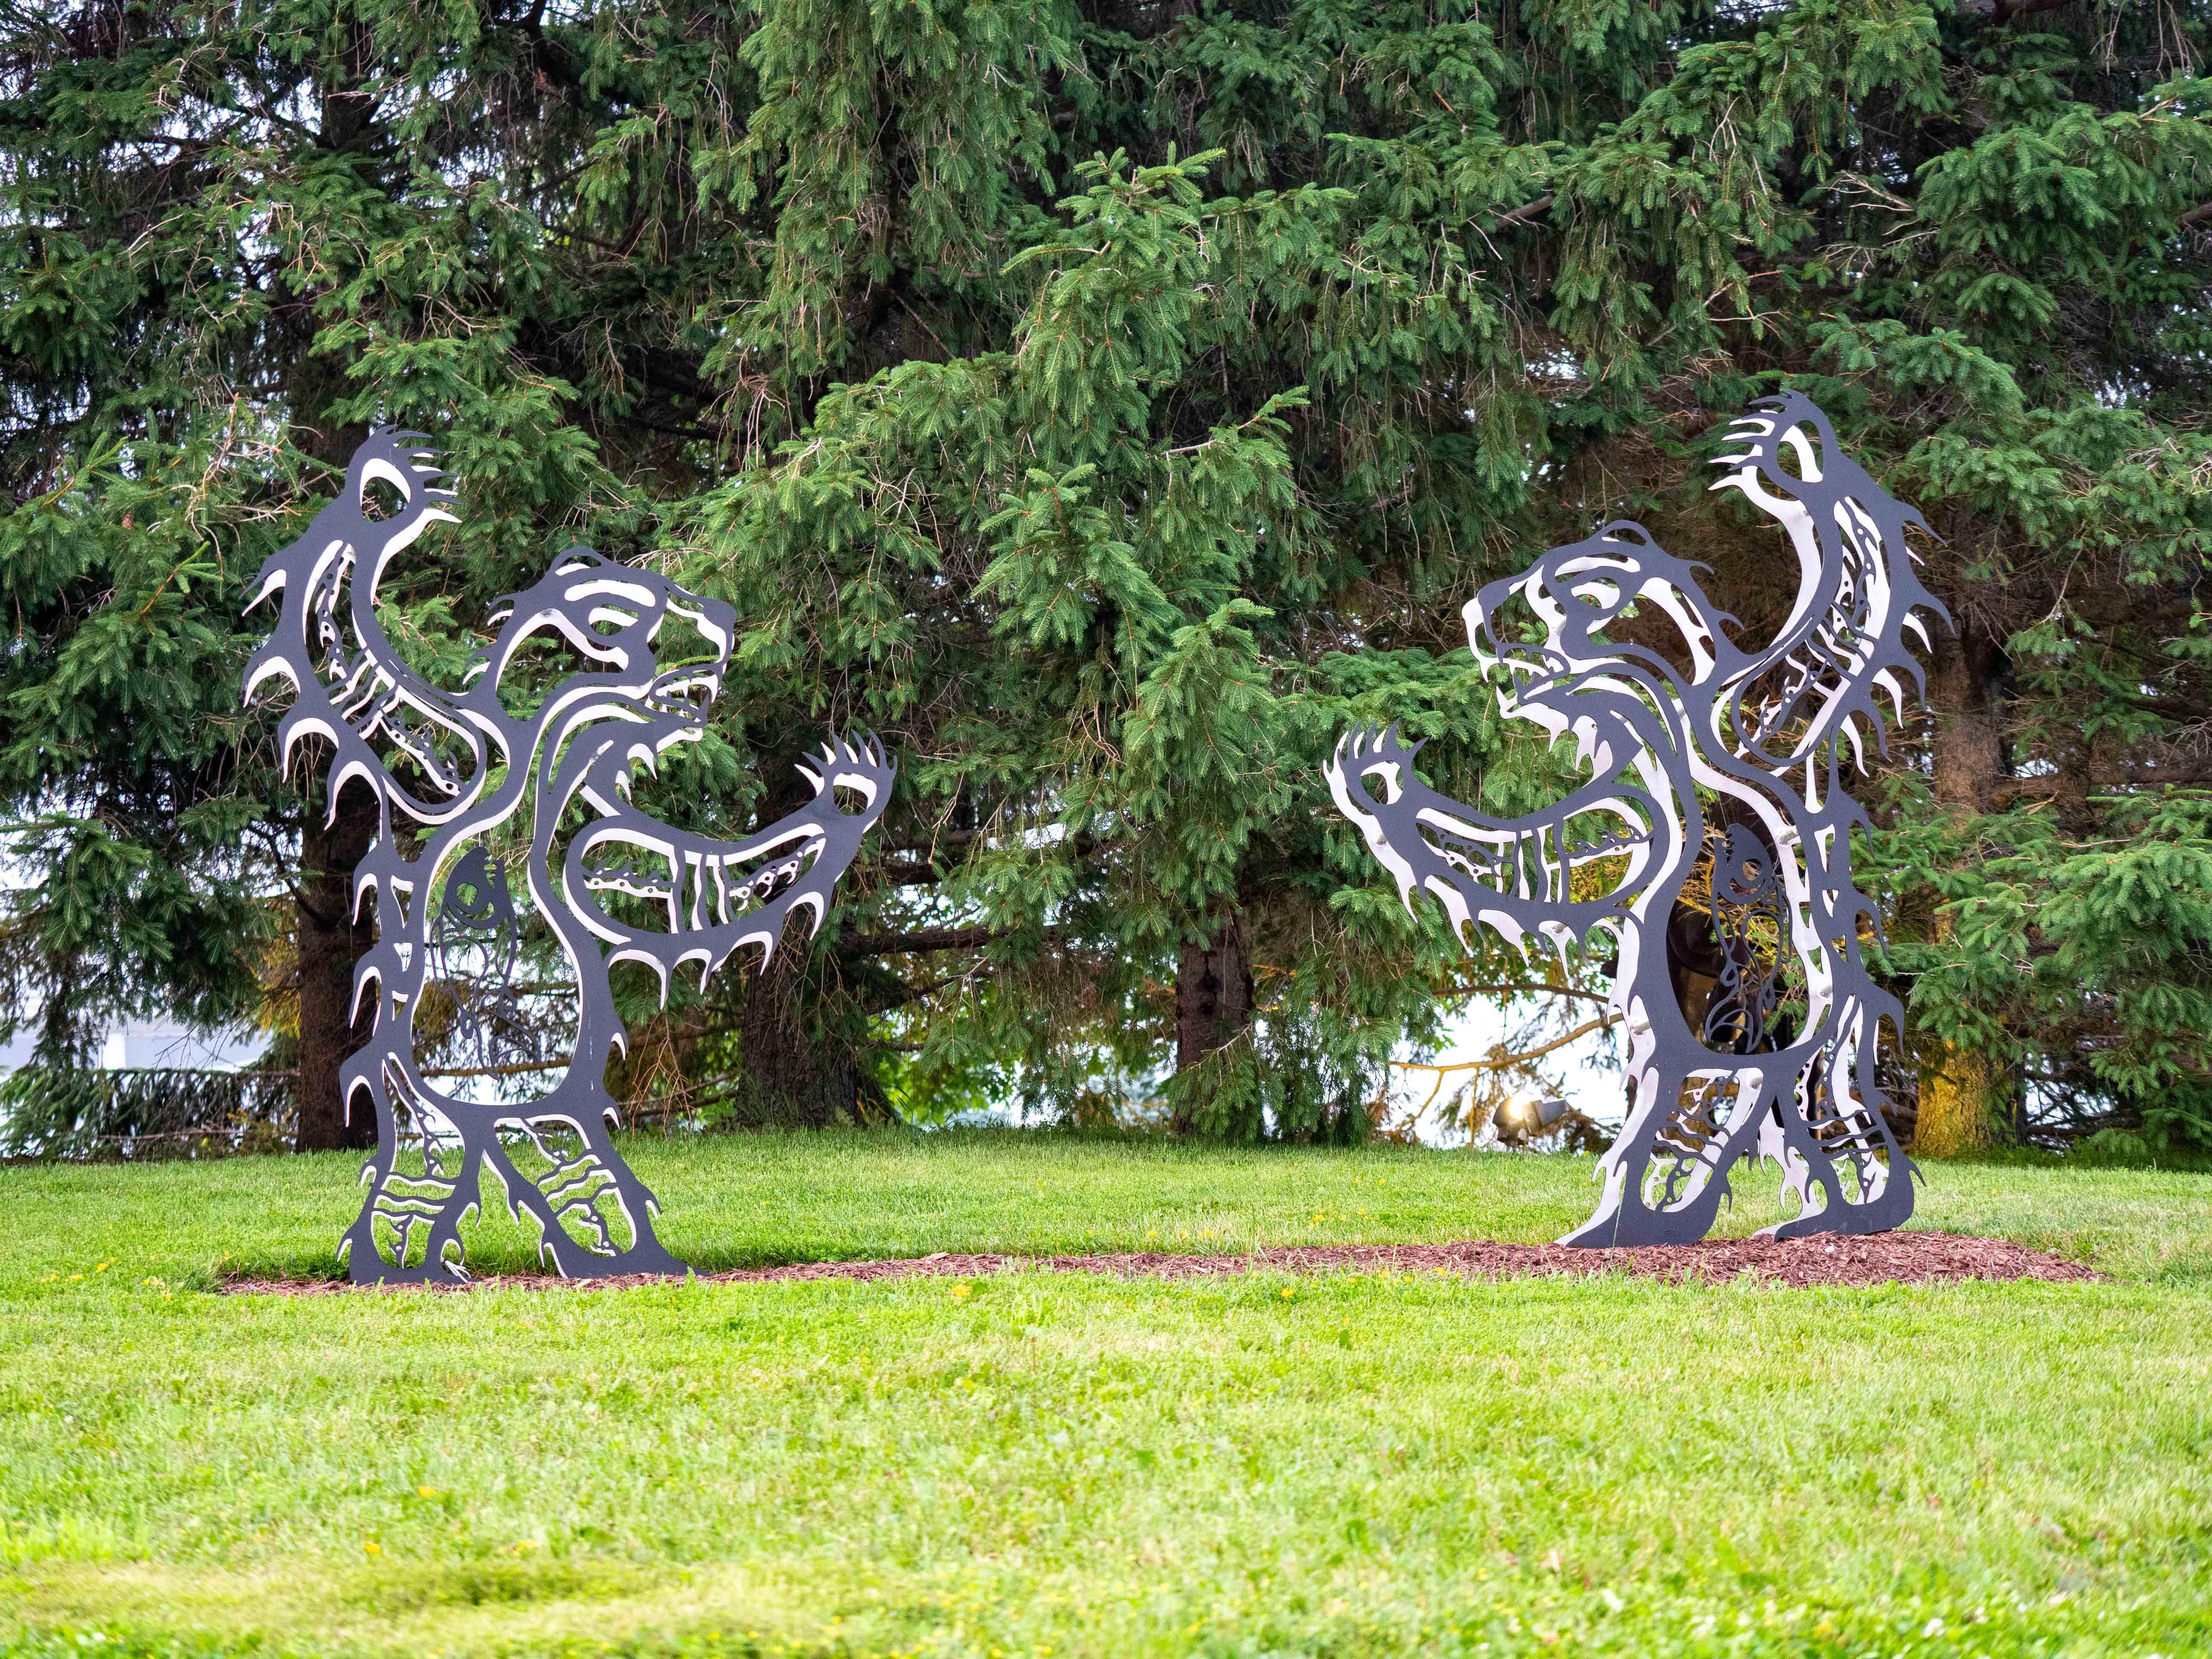 La majesté des animaux des bois est célébrée dans ces étonnantes sculptures en métal de l'artiste Mohawk des Six Nations, Adams. Les magnifiques peintures de Monture représentant des animaux des bois - ours, cerfs, loups, tortues, huards et hérons -